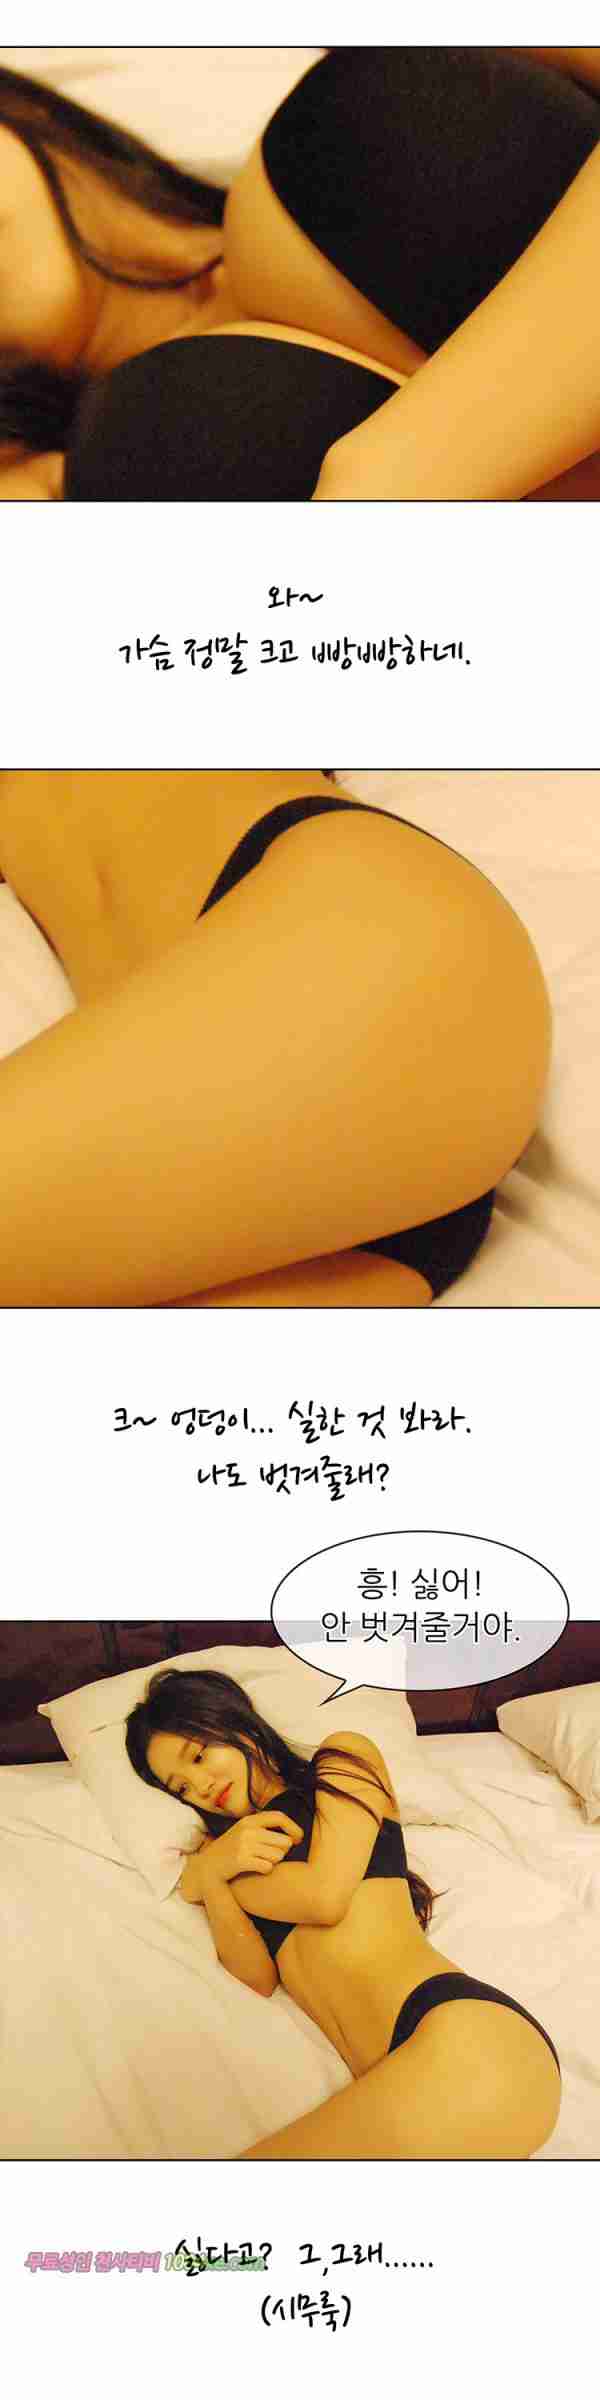 [韩国漫画]ID0015 韩国真人漫画15.rar--性感提示：令人迷醉丰乳夜店装半裸出镜丝